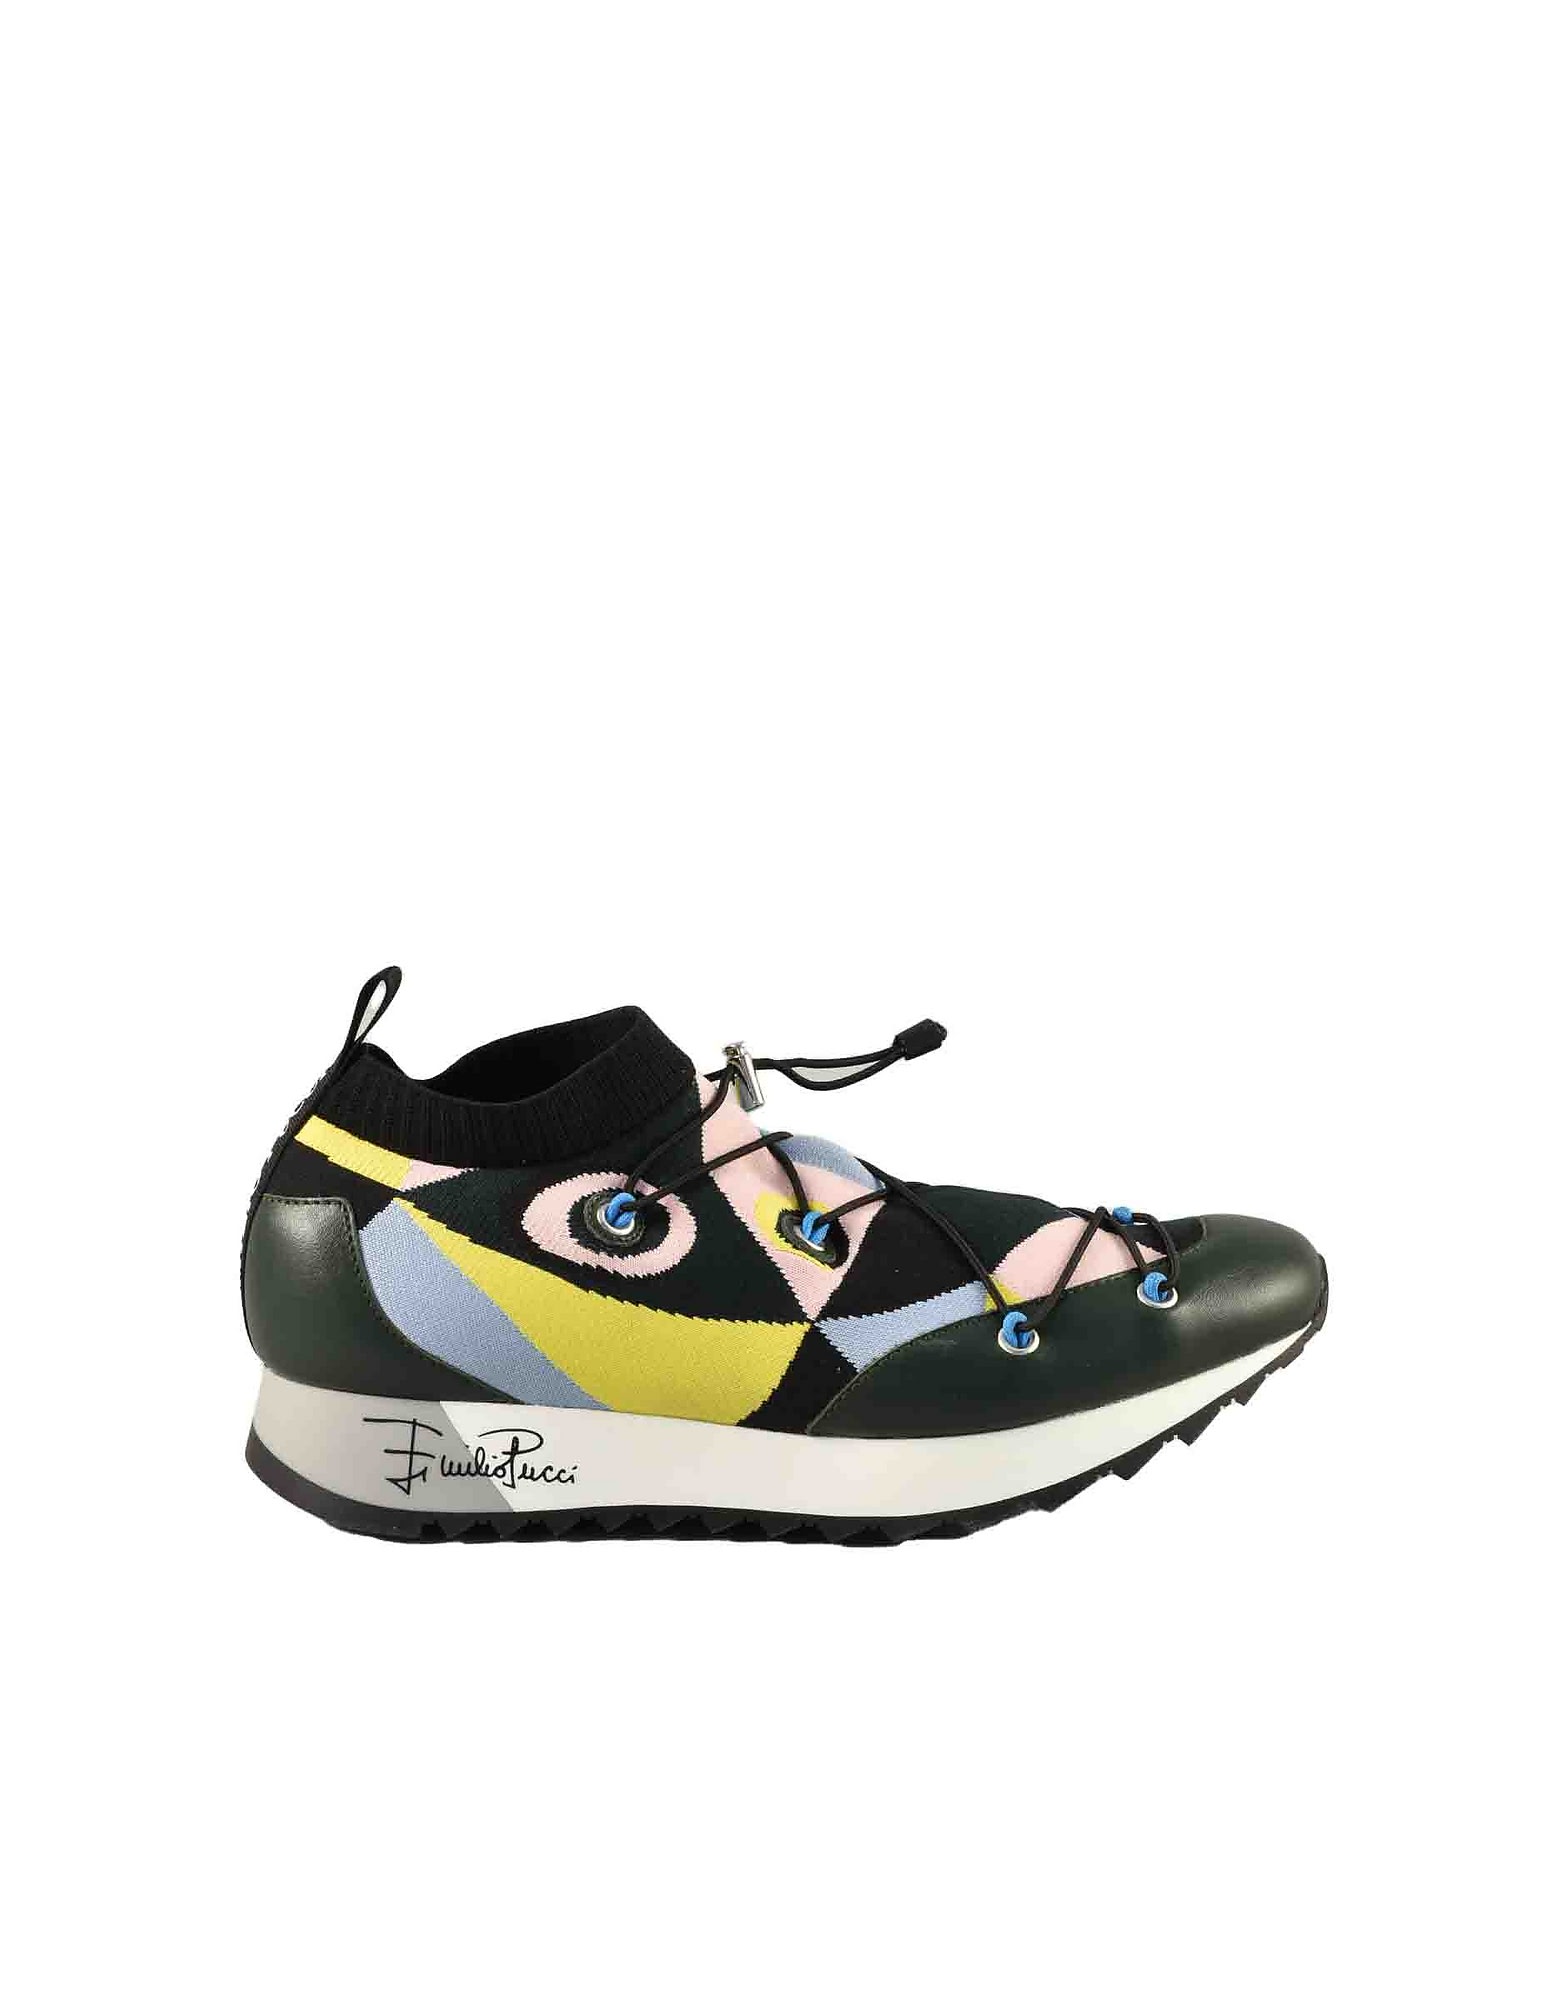 Emilio Pucci Womens Multicolor Sneakers